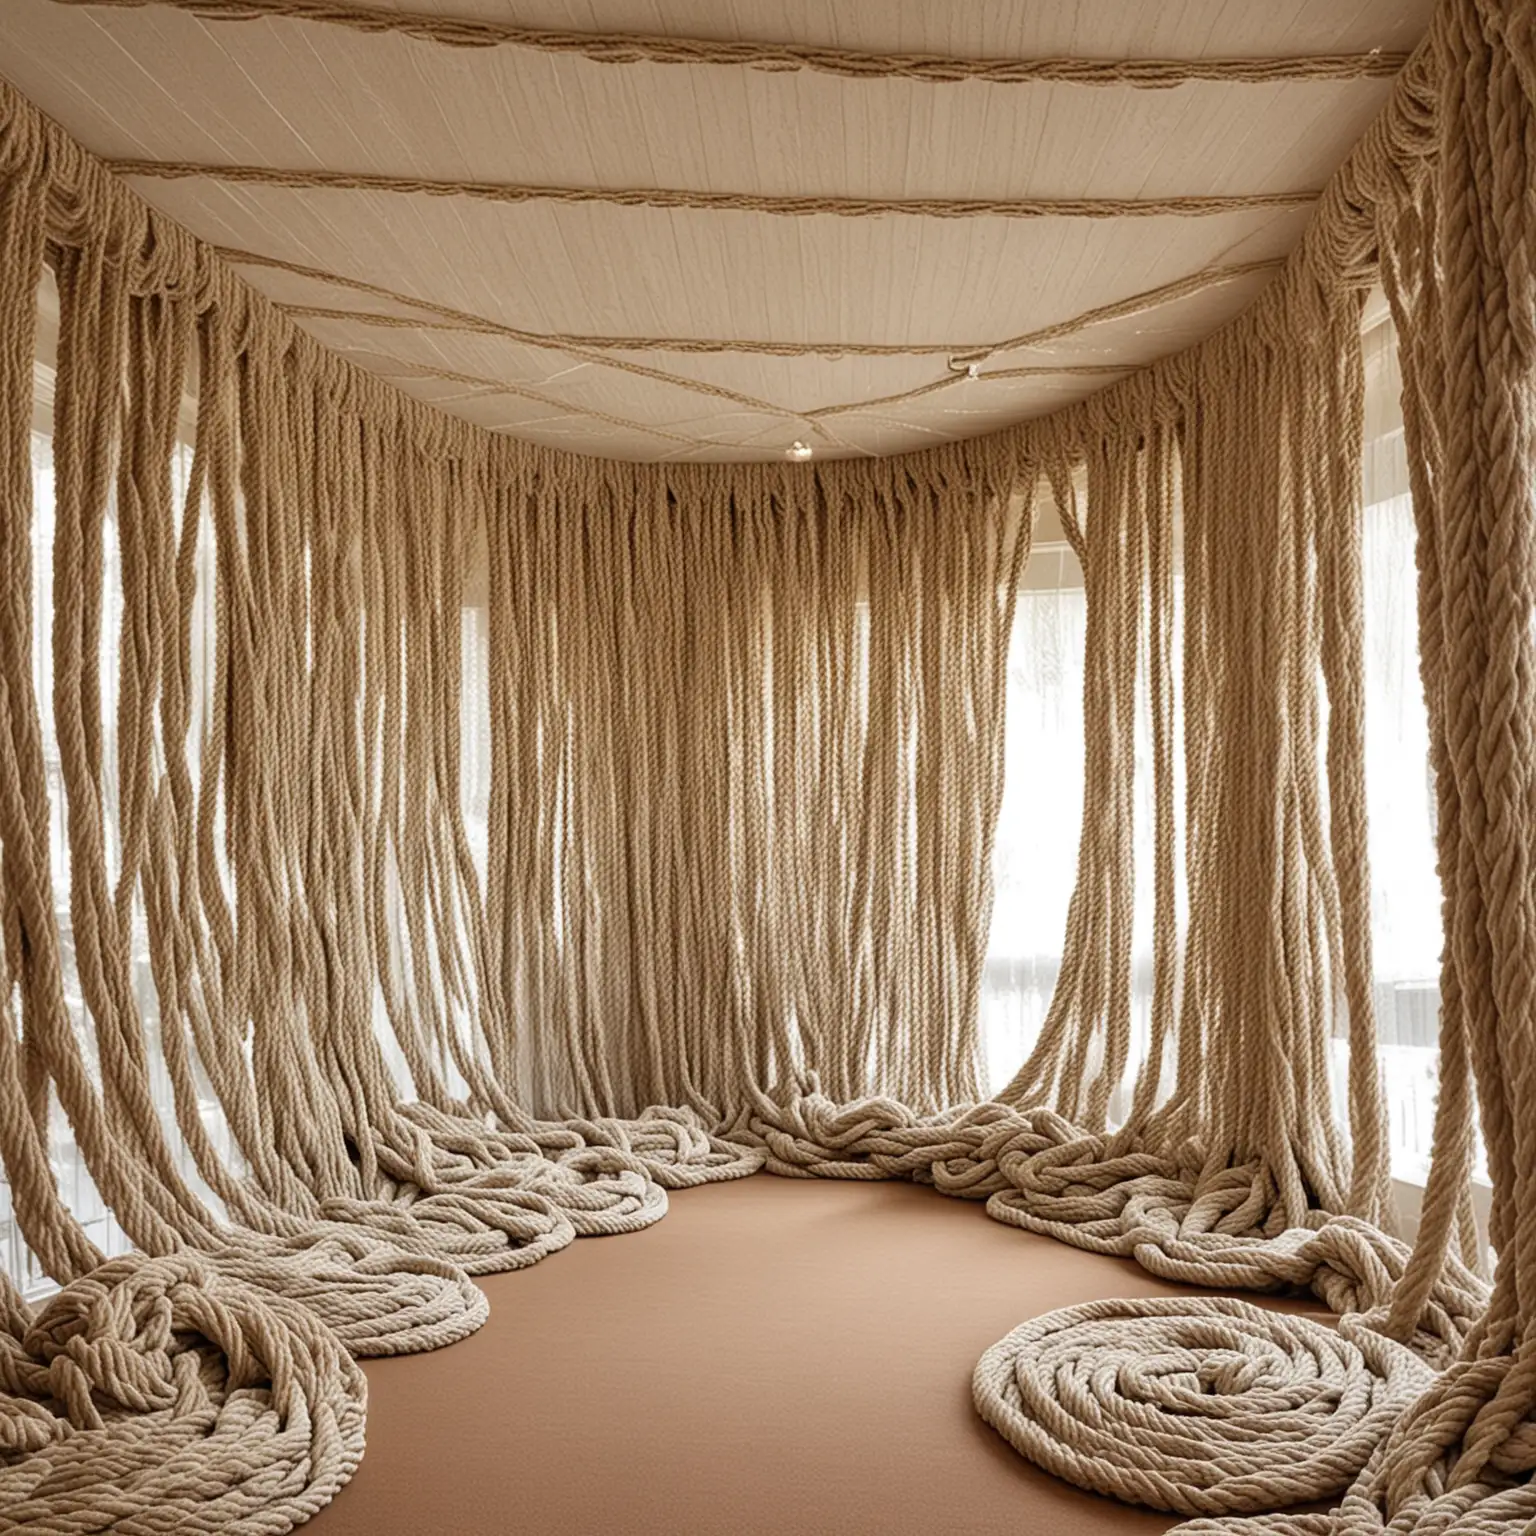 请帮我制作一个小房间 房间间的顶部全部都是编织的绳线和布料很长很密 很长垂落下来的样子